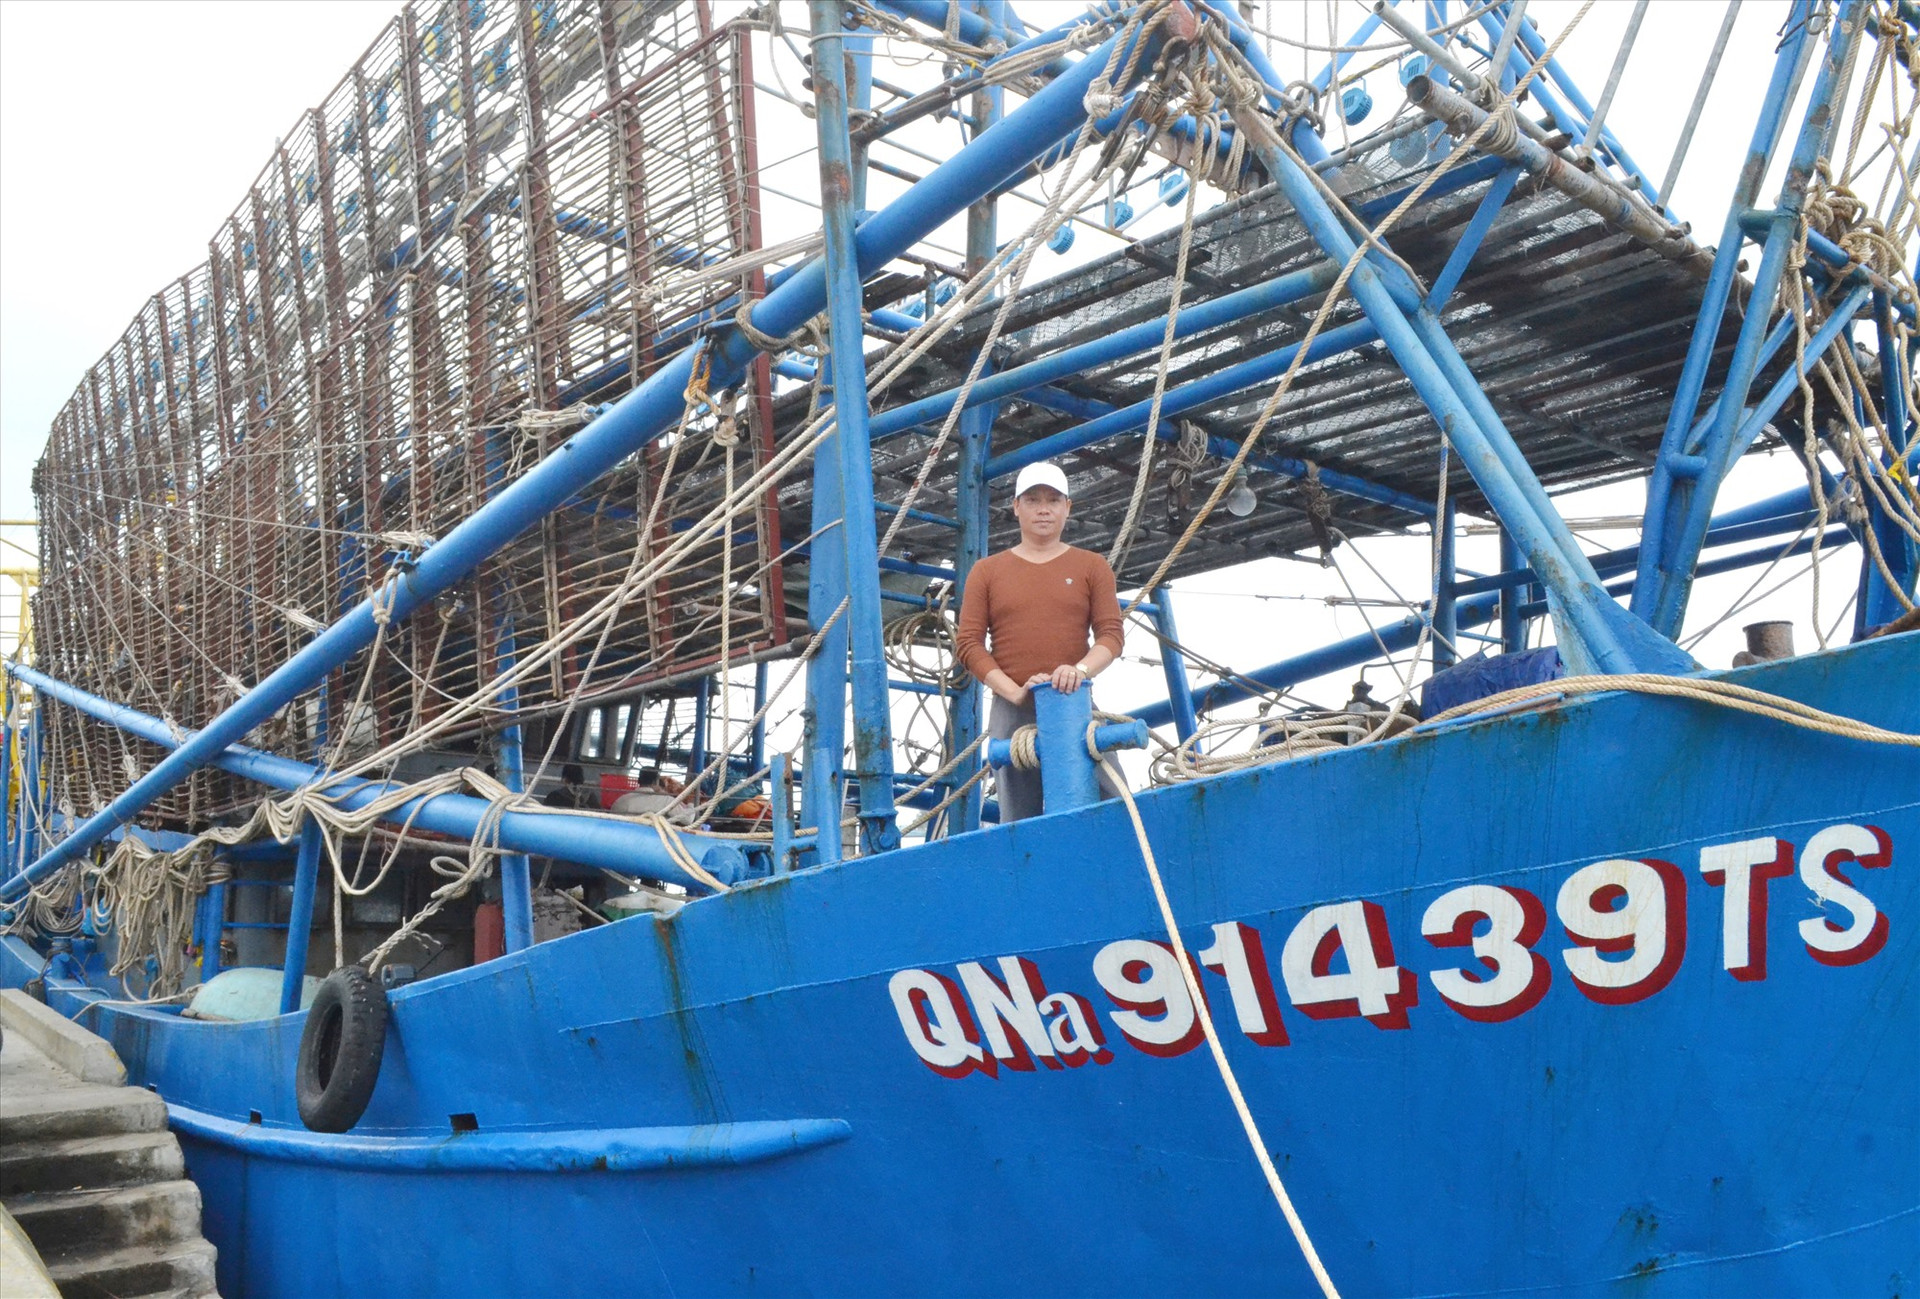 Ngư dân Nguyễn Văn Nghị vừa có chuyến biển khá thành công. Ảnh: Q.VIỆT